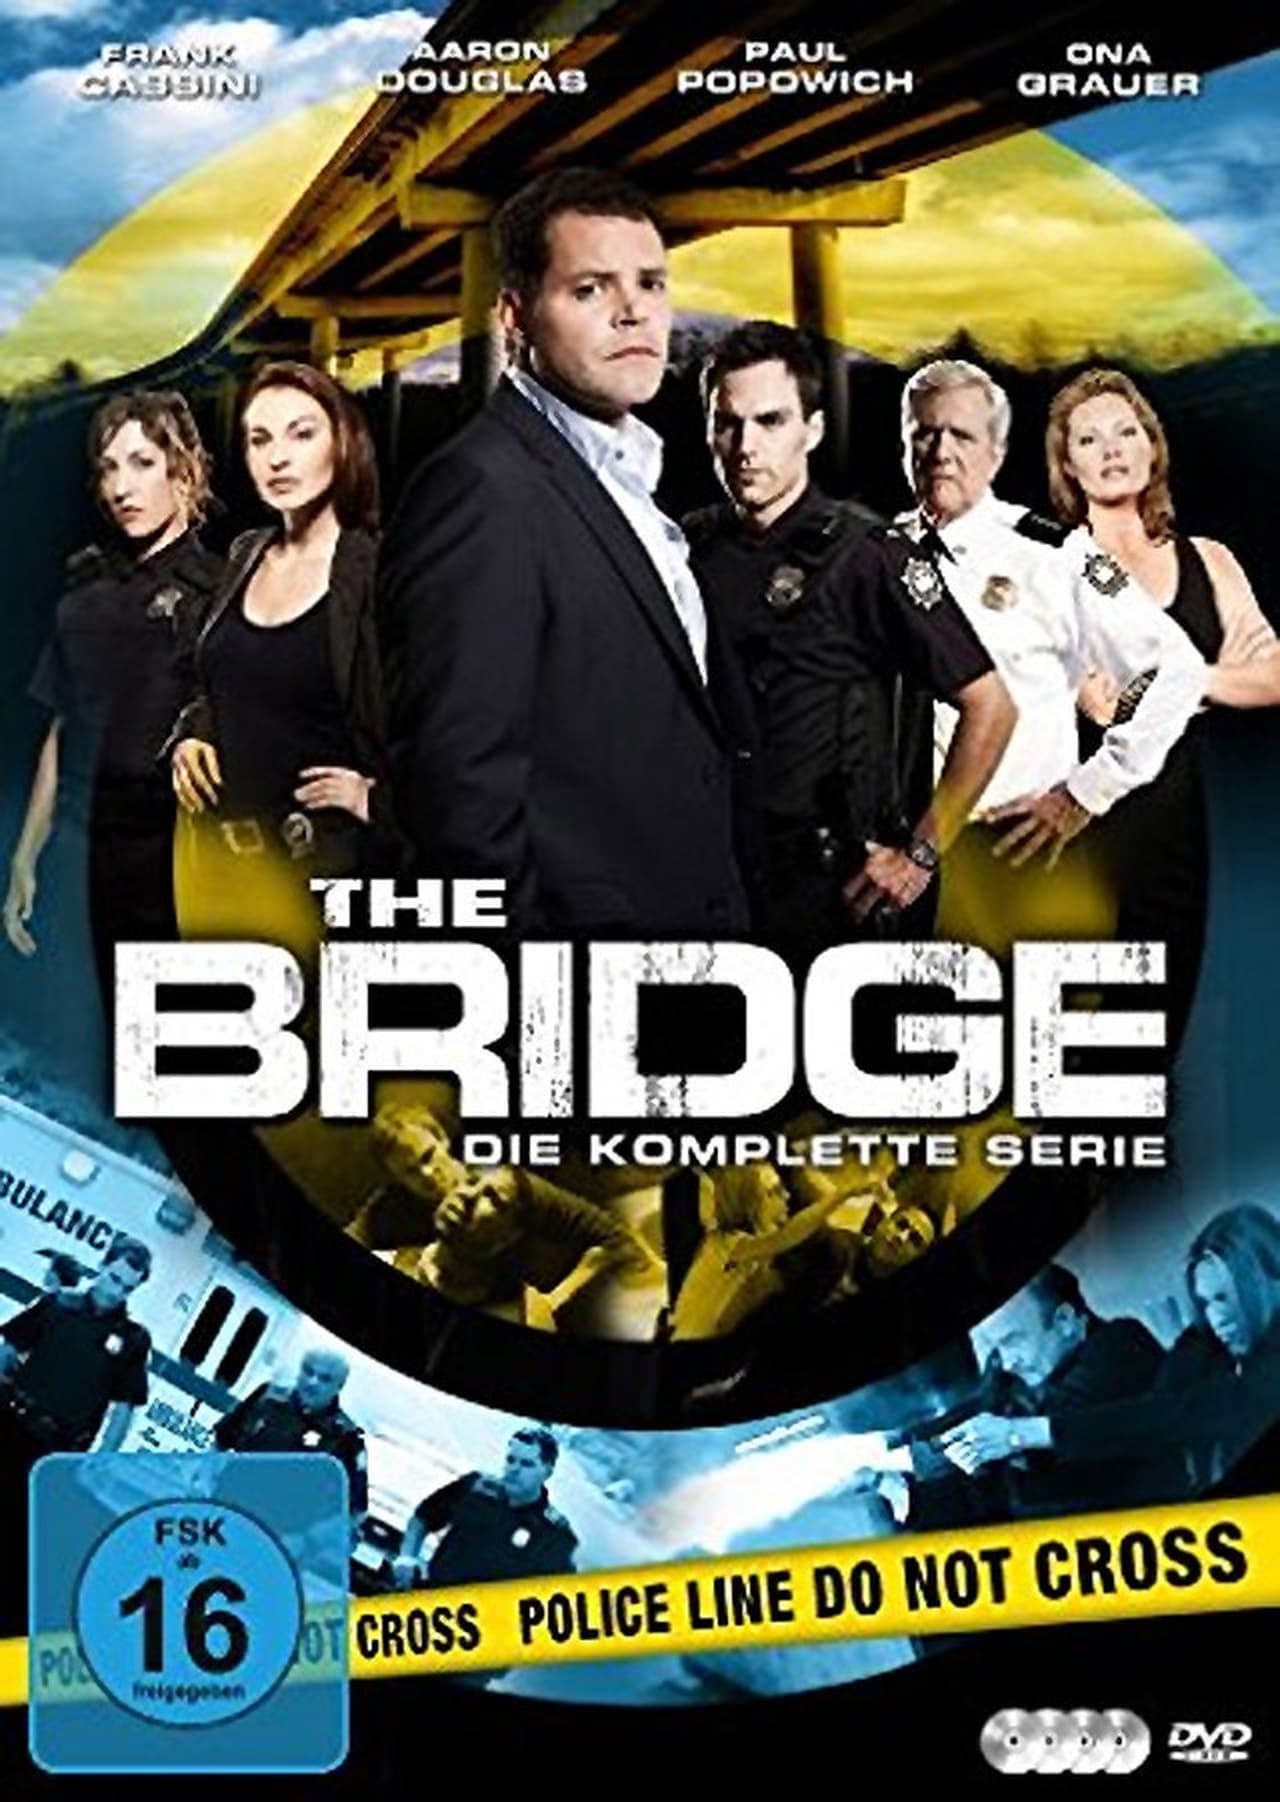 The Bridge (2010)